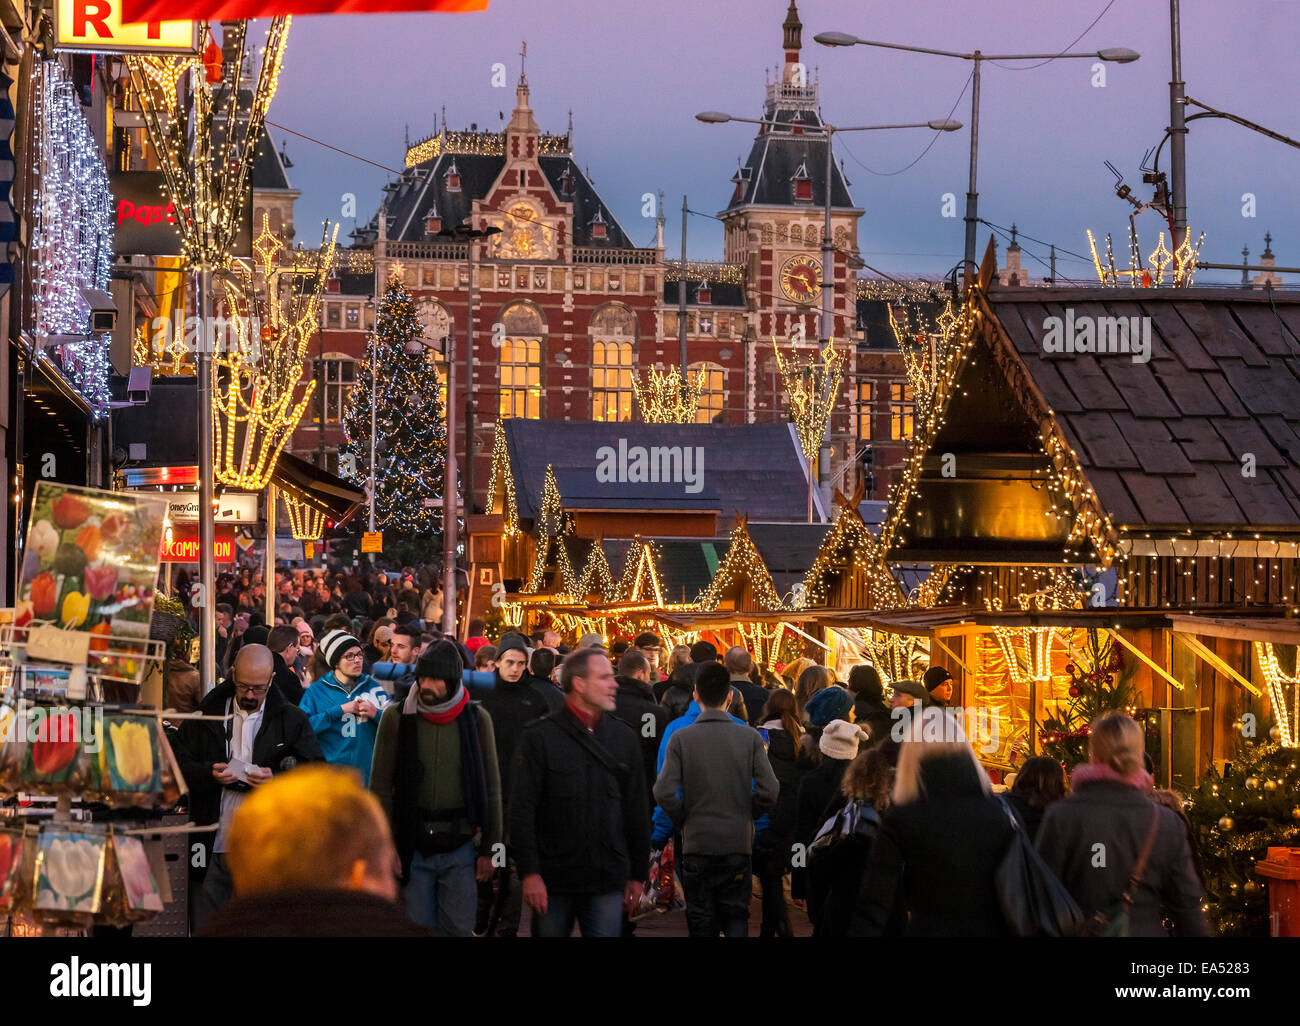 AmsterdamWeihnachtsmarkt auf dem Damrak vom Hauptbahnhof, der Dam